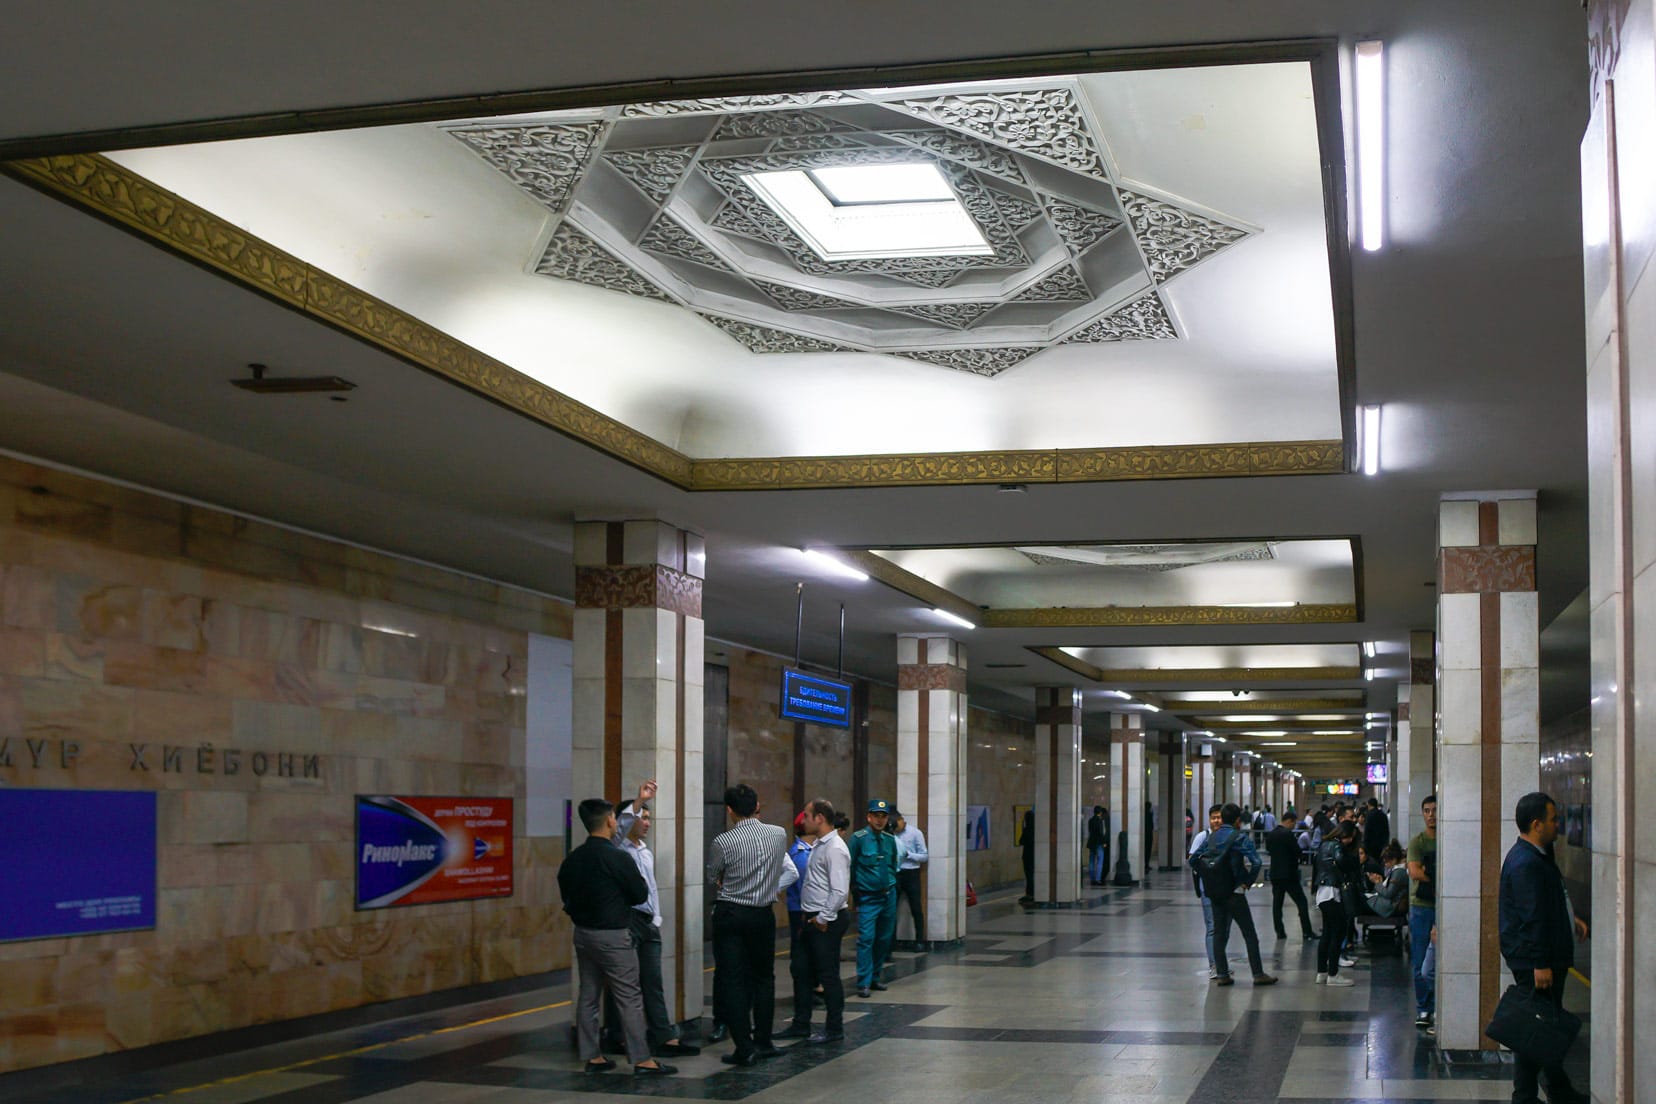 Amir-Timur-Xiyoboni-metro,-Tashkent